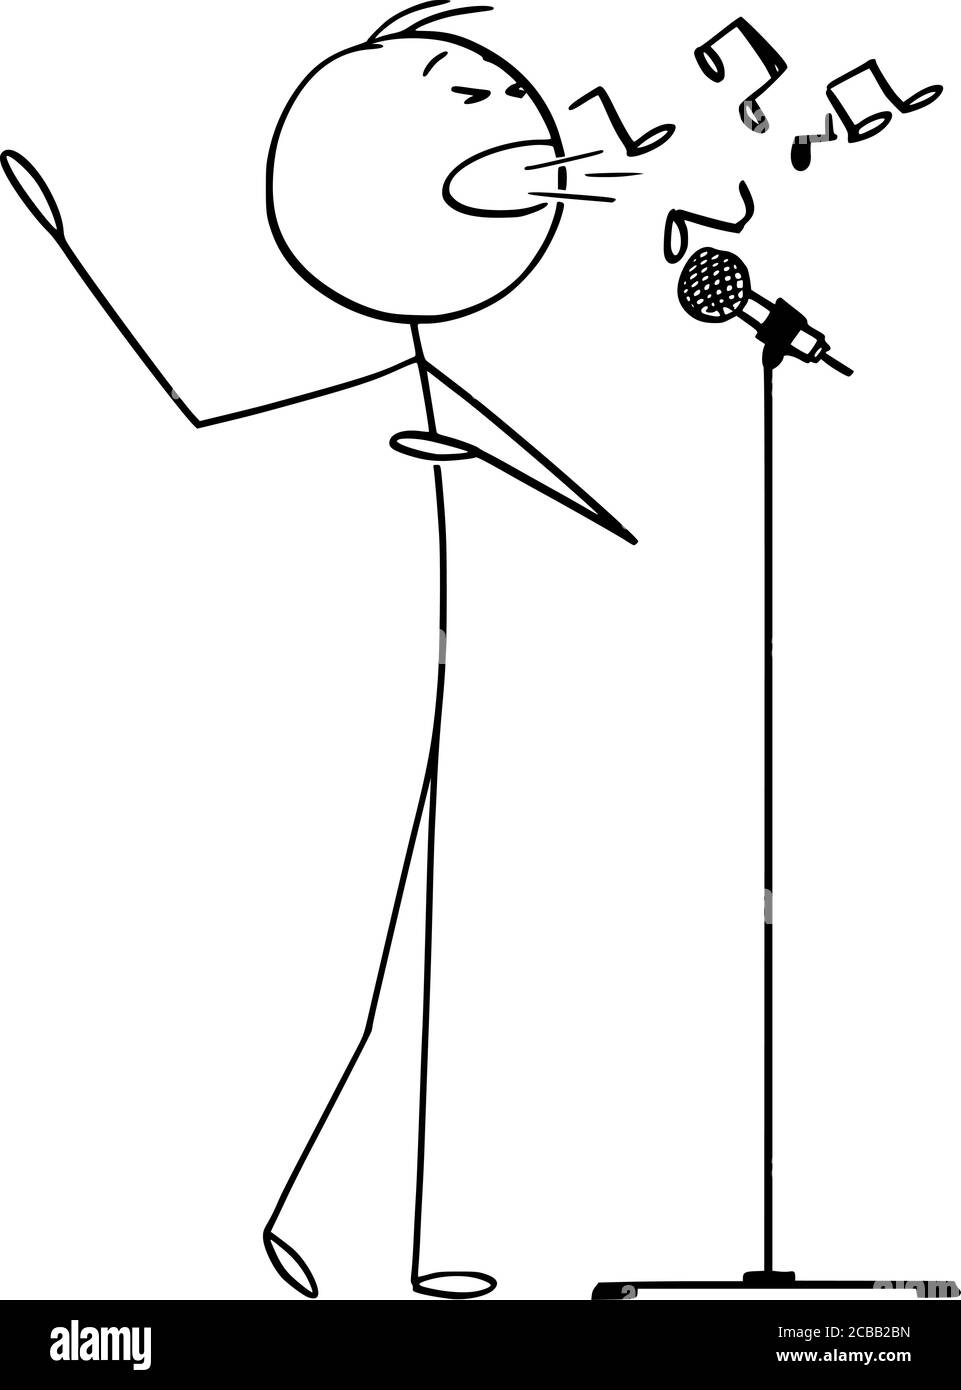 Disegno grafico vettoriale di cartoni animati illustrazione concettuale di uomo o cantante cantare canzone sul palco per microfono e la creazione di musica. Illustrazione Vettoriale